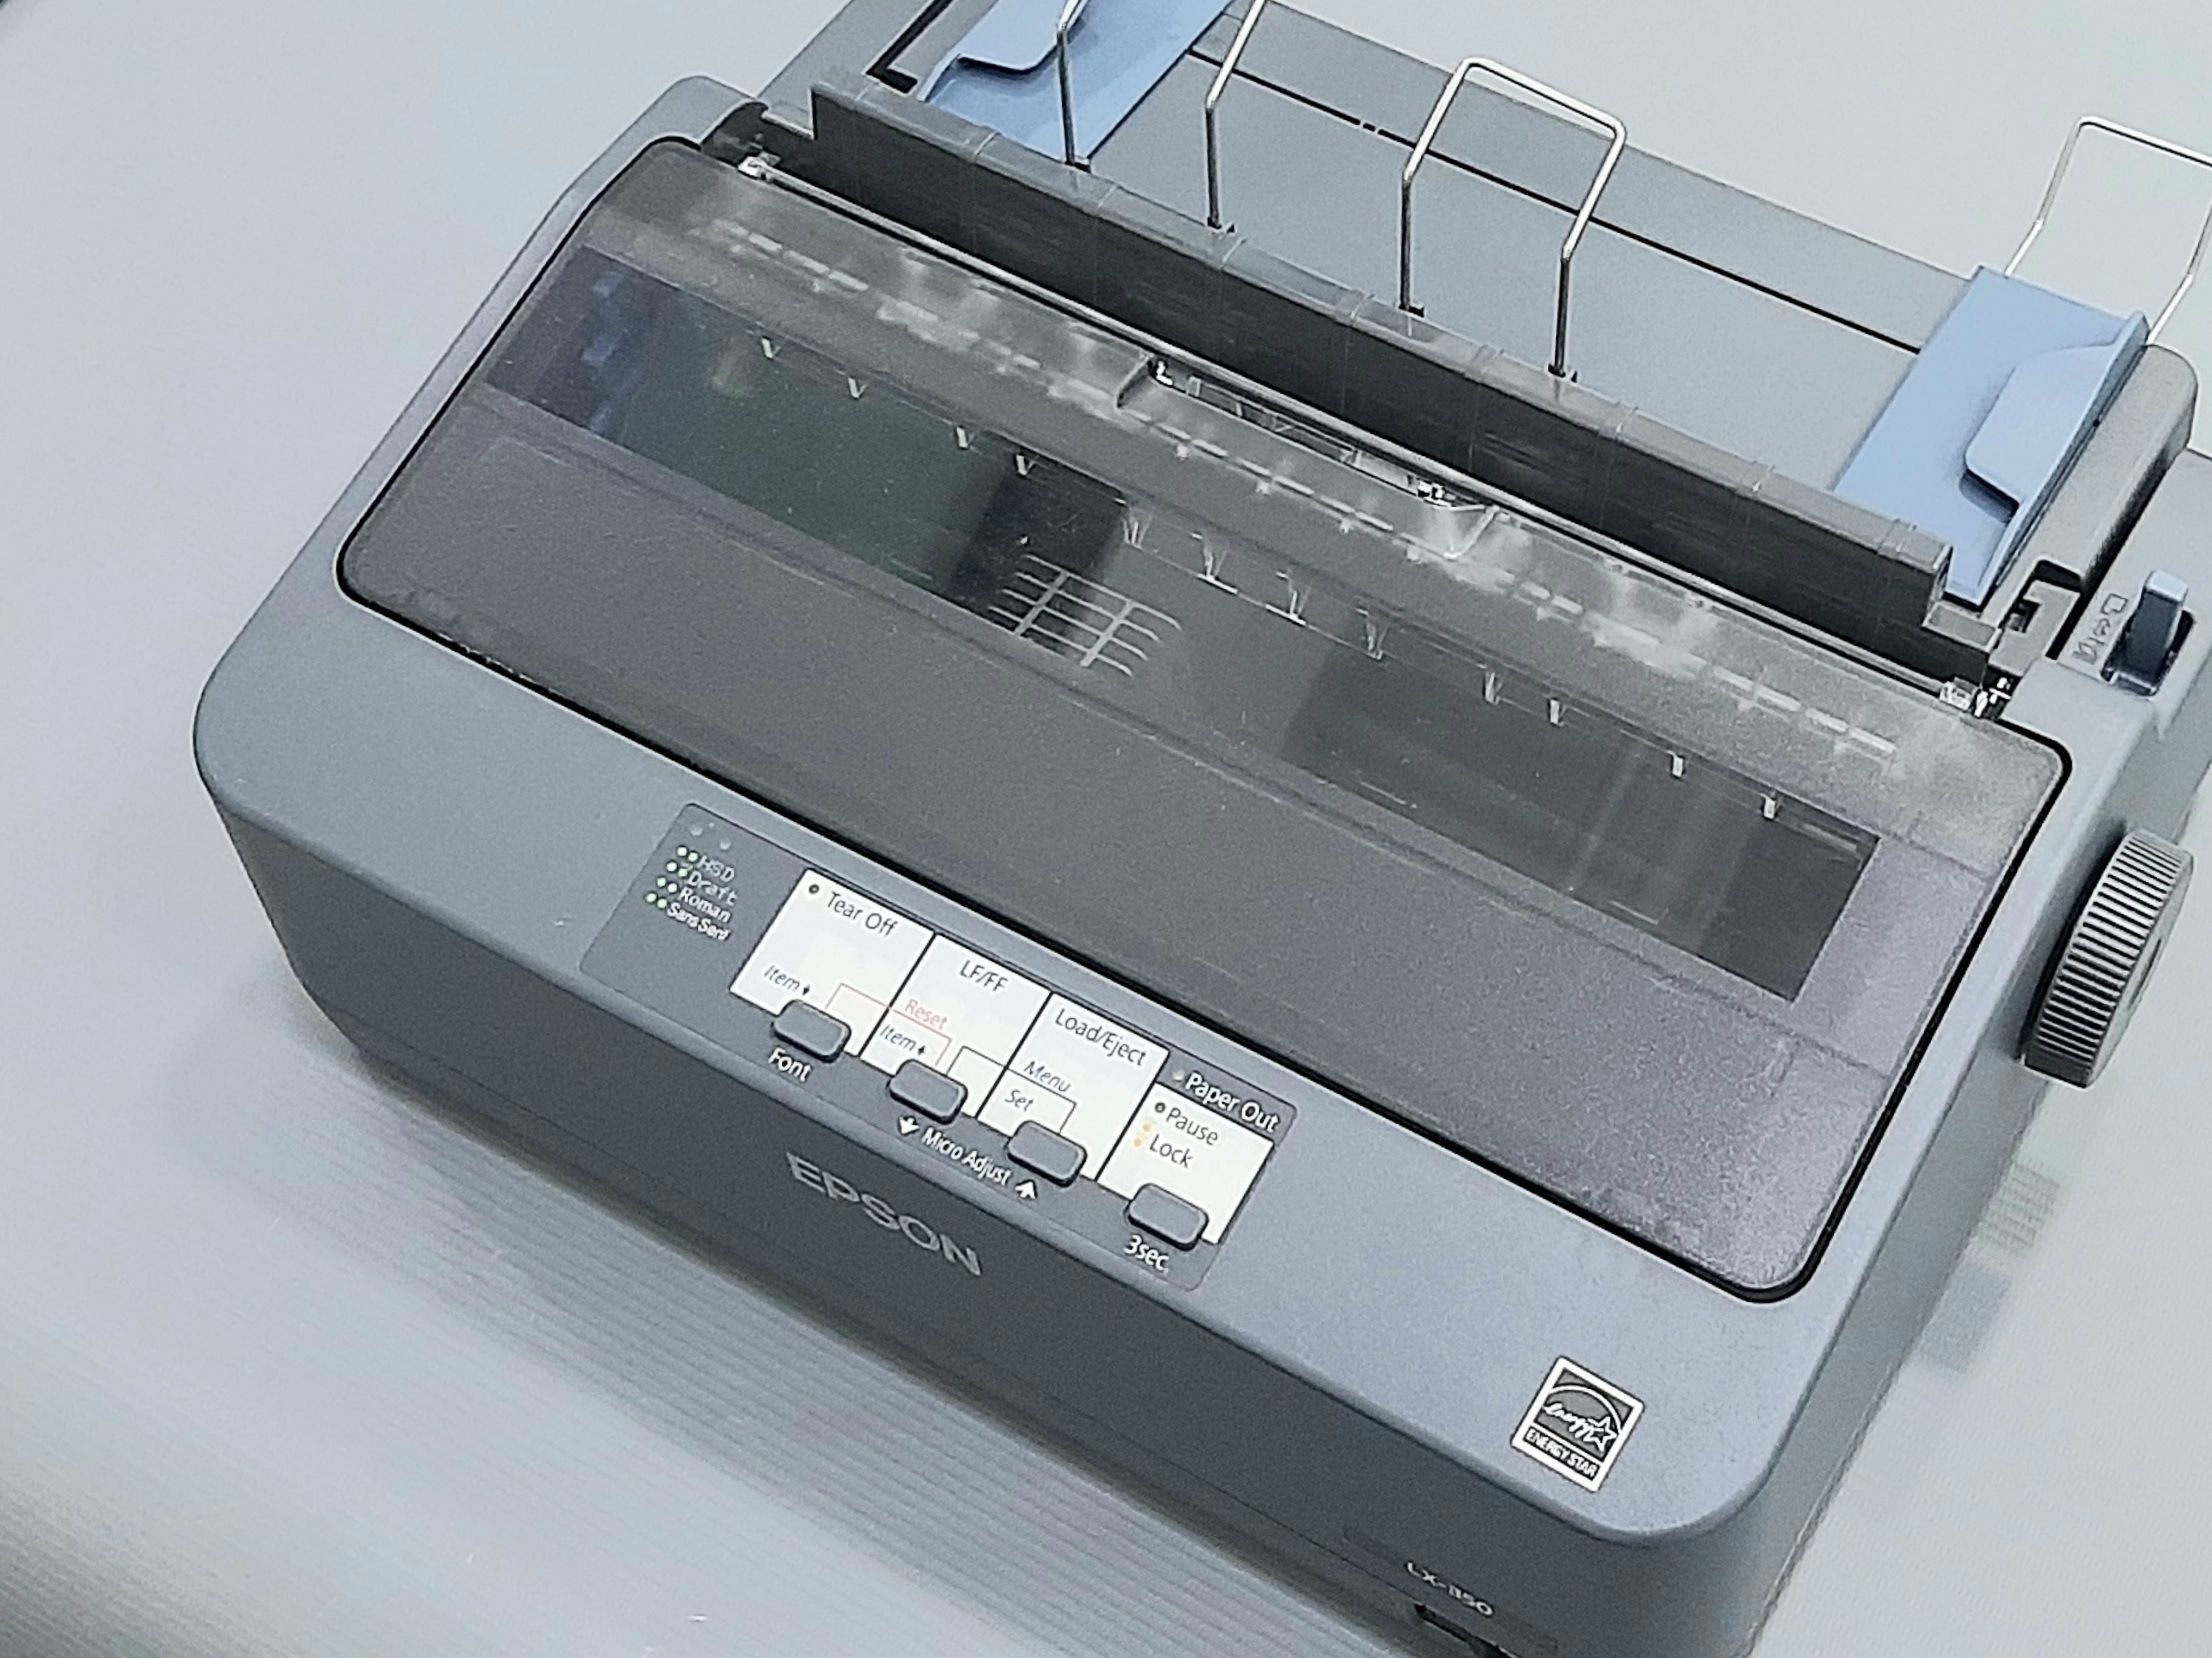 Impresora matricial LX-350 - Consultaud Store